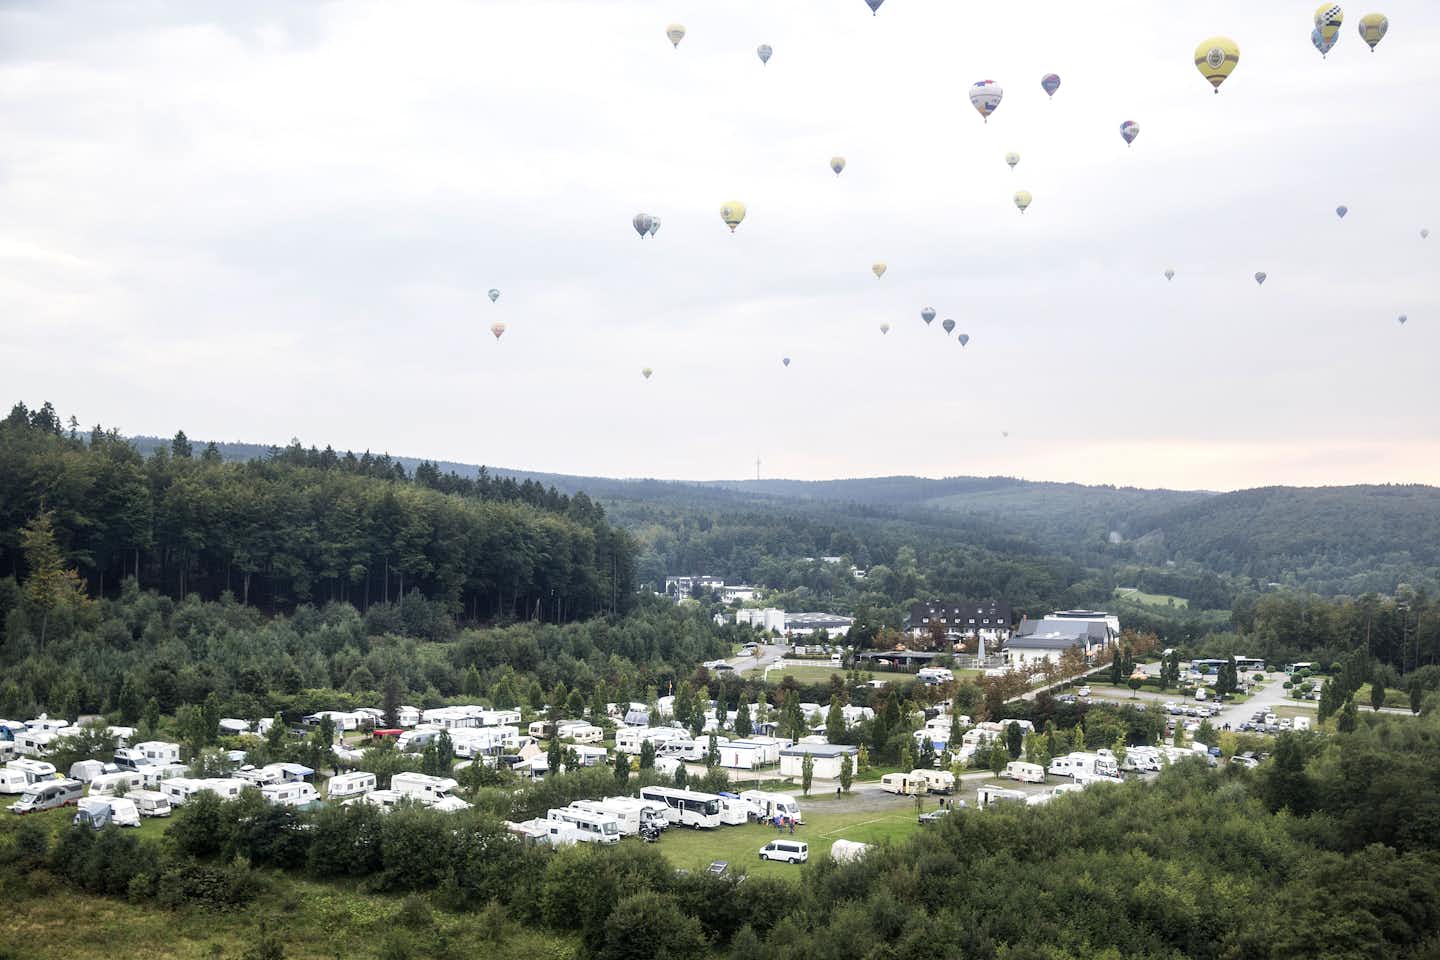 Campingplatz Warsteiner Welt - Blick auf Campingplatz während des Heißluftballon-Wettbewerbs